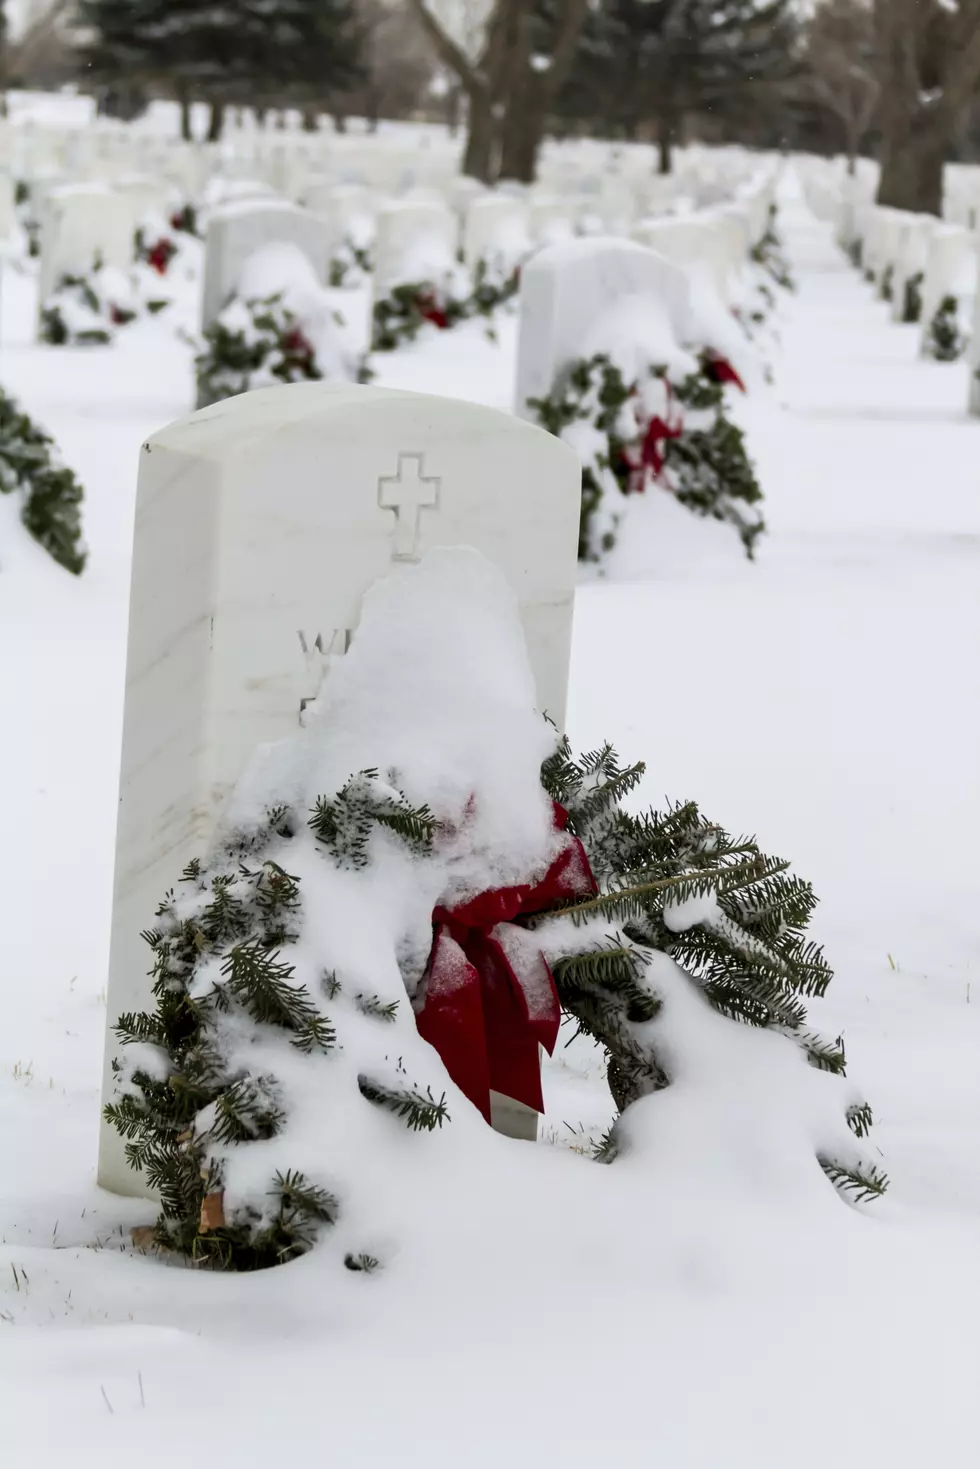 Wreaths Across America Expands Goals